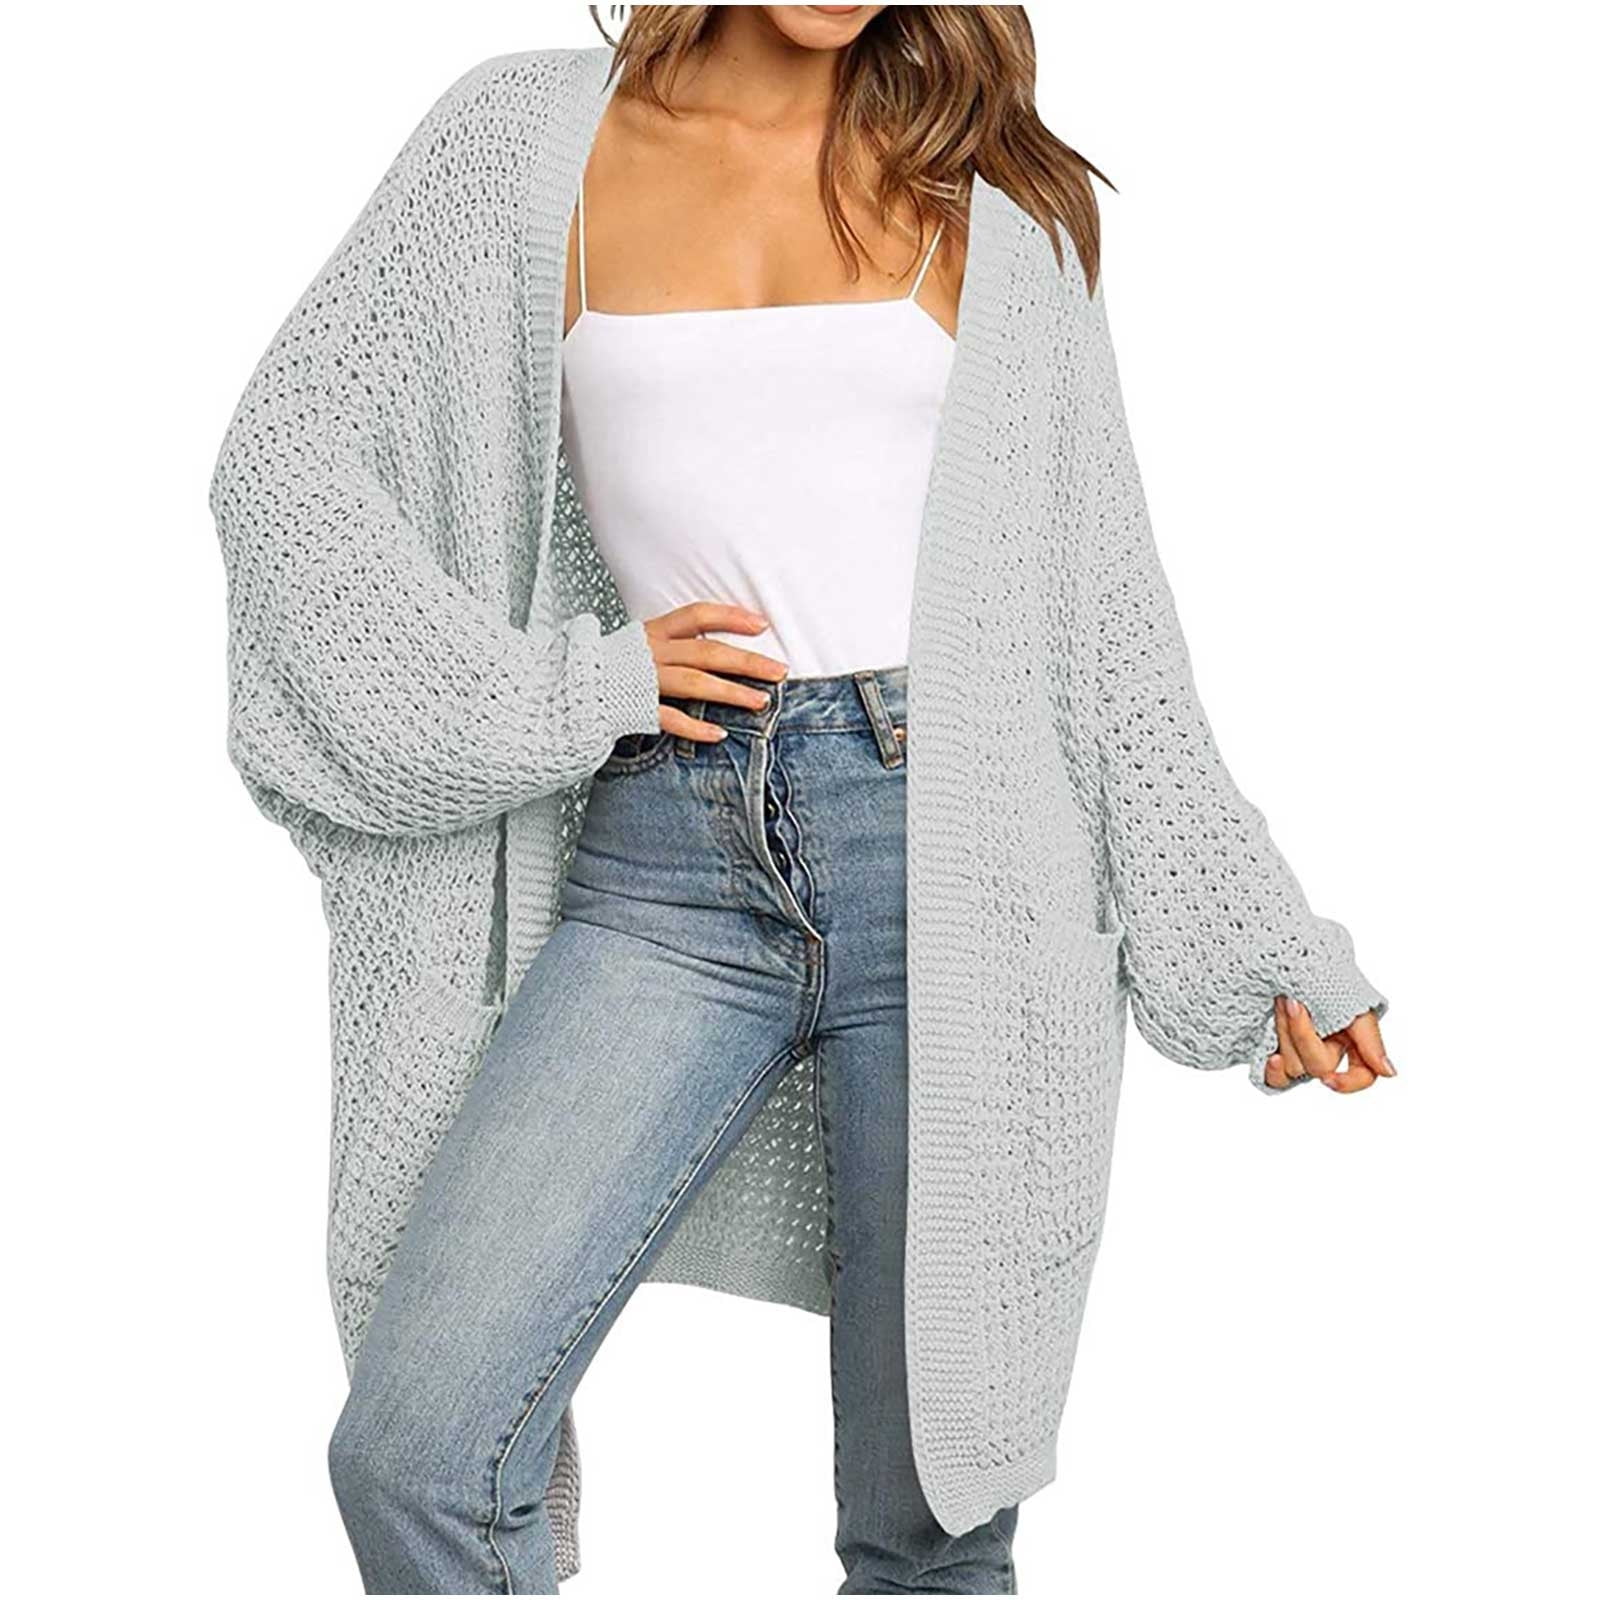 ShomPort Women Long Sleeve Knit Sweater Cardigan Fall  Oversized Open  Front Lounge Wear Cardigans Coat